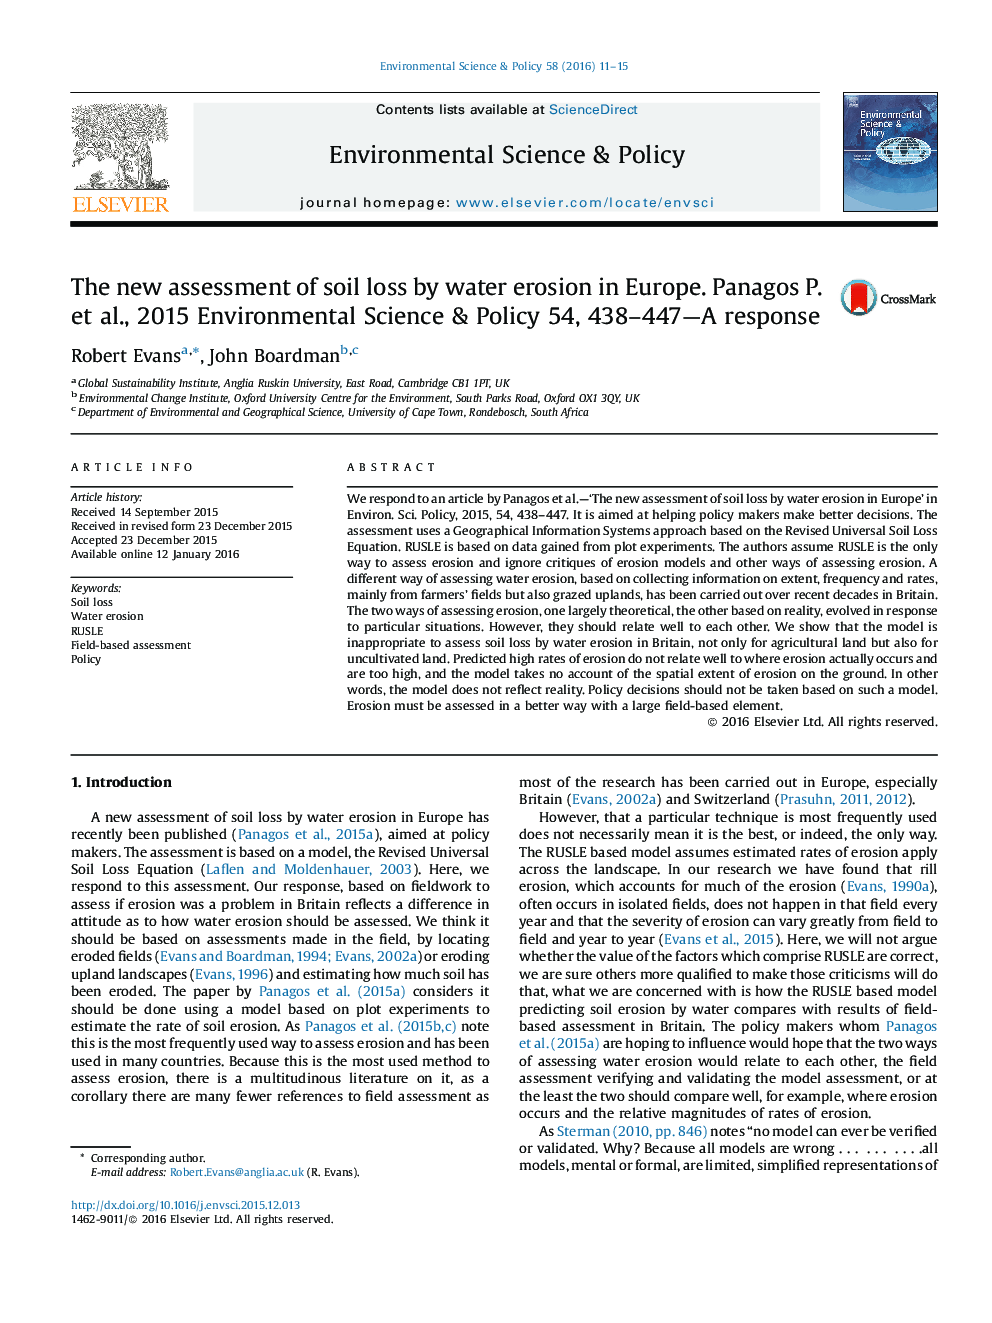 ارزیابی جدید از دست دادن خاک با فرسایش آب در اروپا؛ پاسخ Panagos ص و همکاران، 2015 علوم محیط زیست و سیاست 54، 438-447-A 